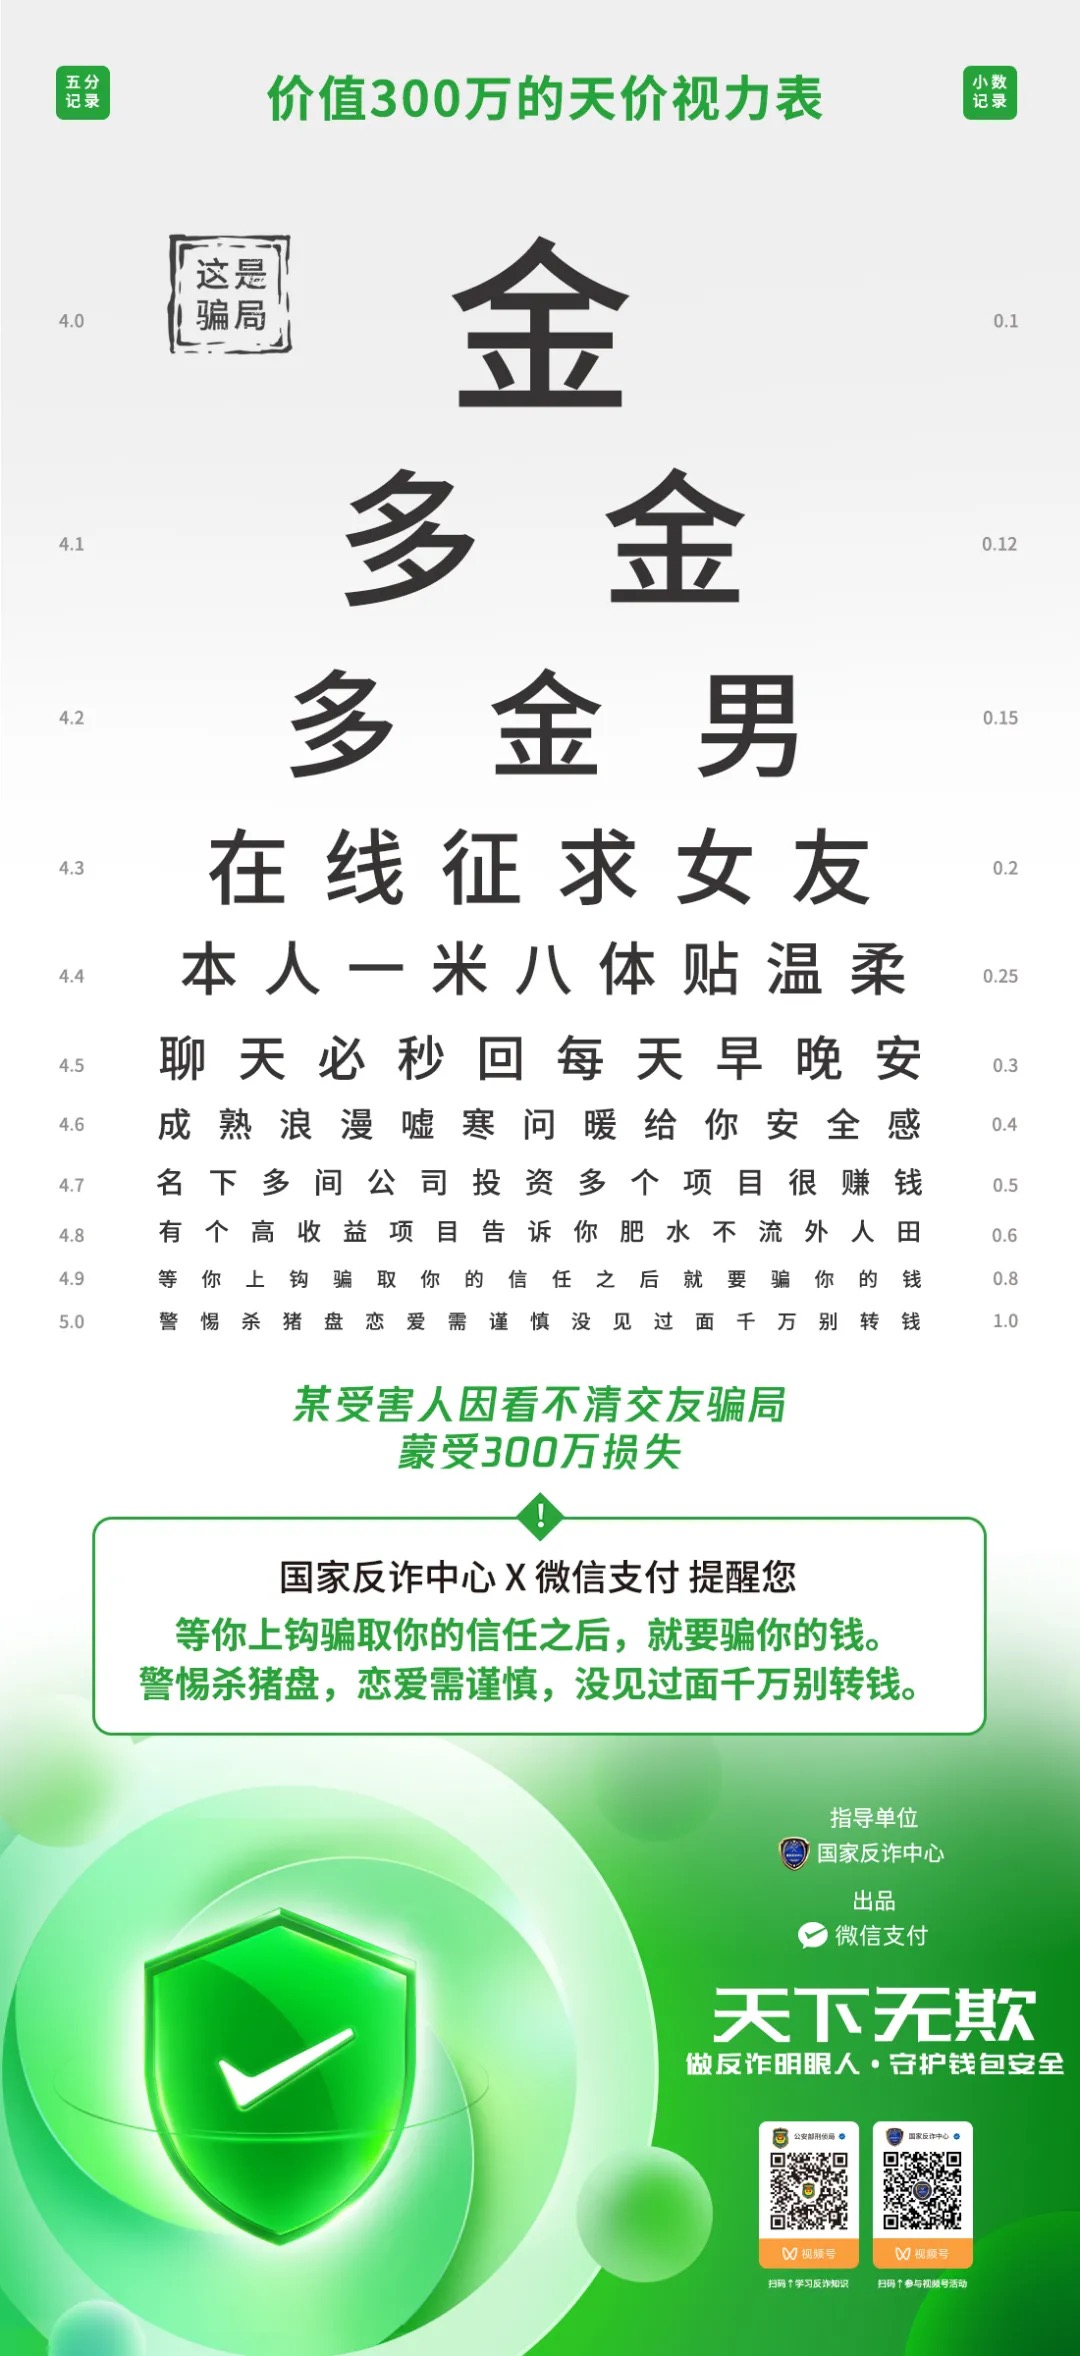 蓝绿色眼科视力测试手绘全国爱眼日节日宣传中文微信朋友圈 - 模板 - Canva可画